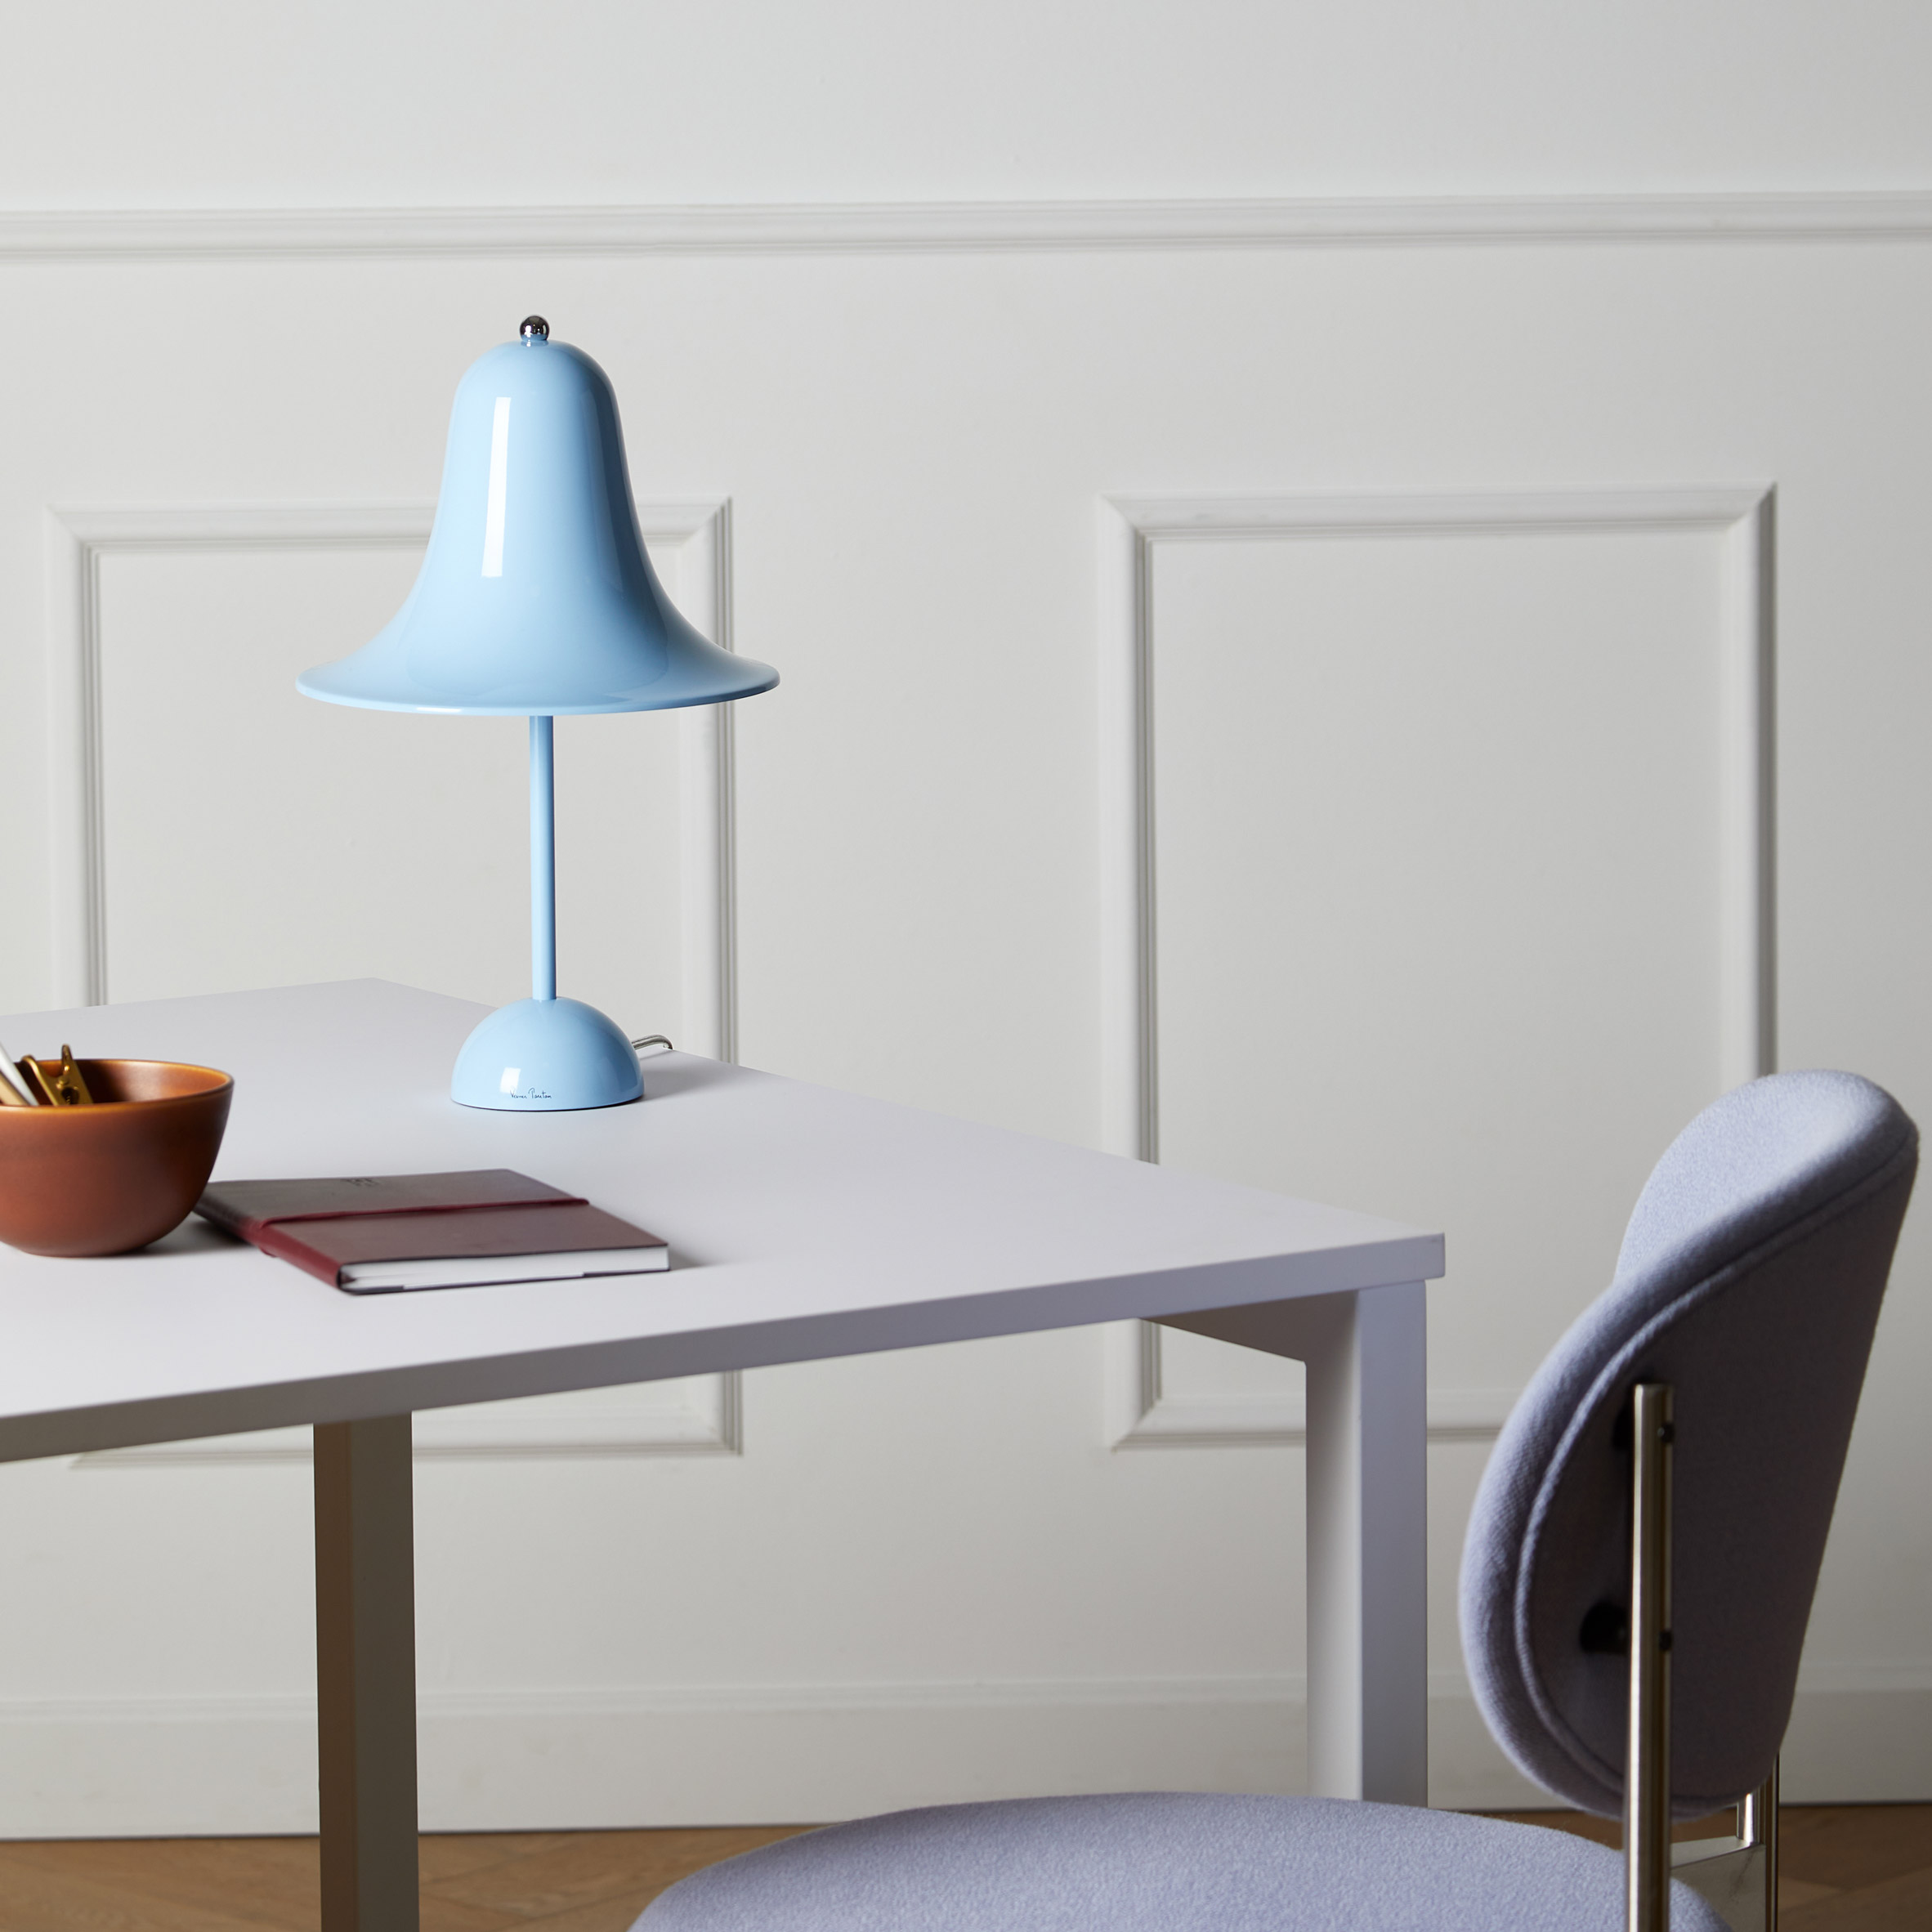 Blue Pantop table lamp by Verner Panton for Verpan